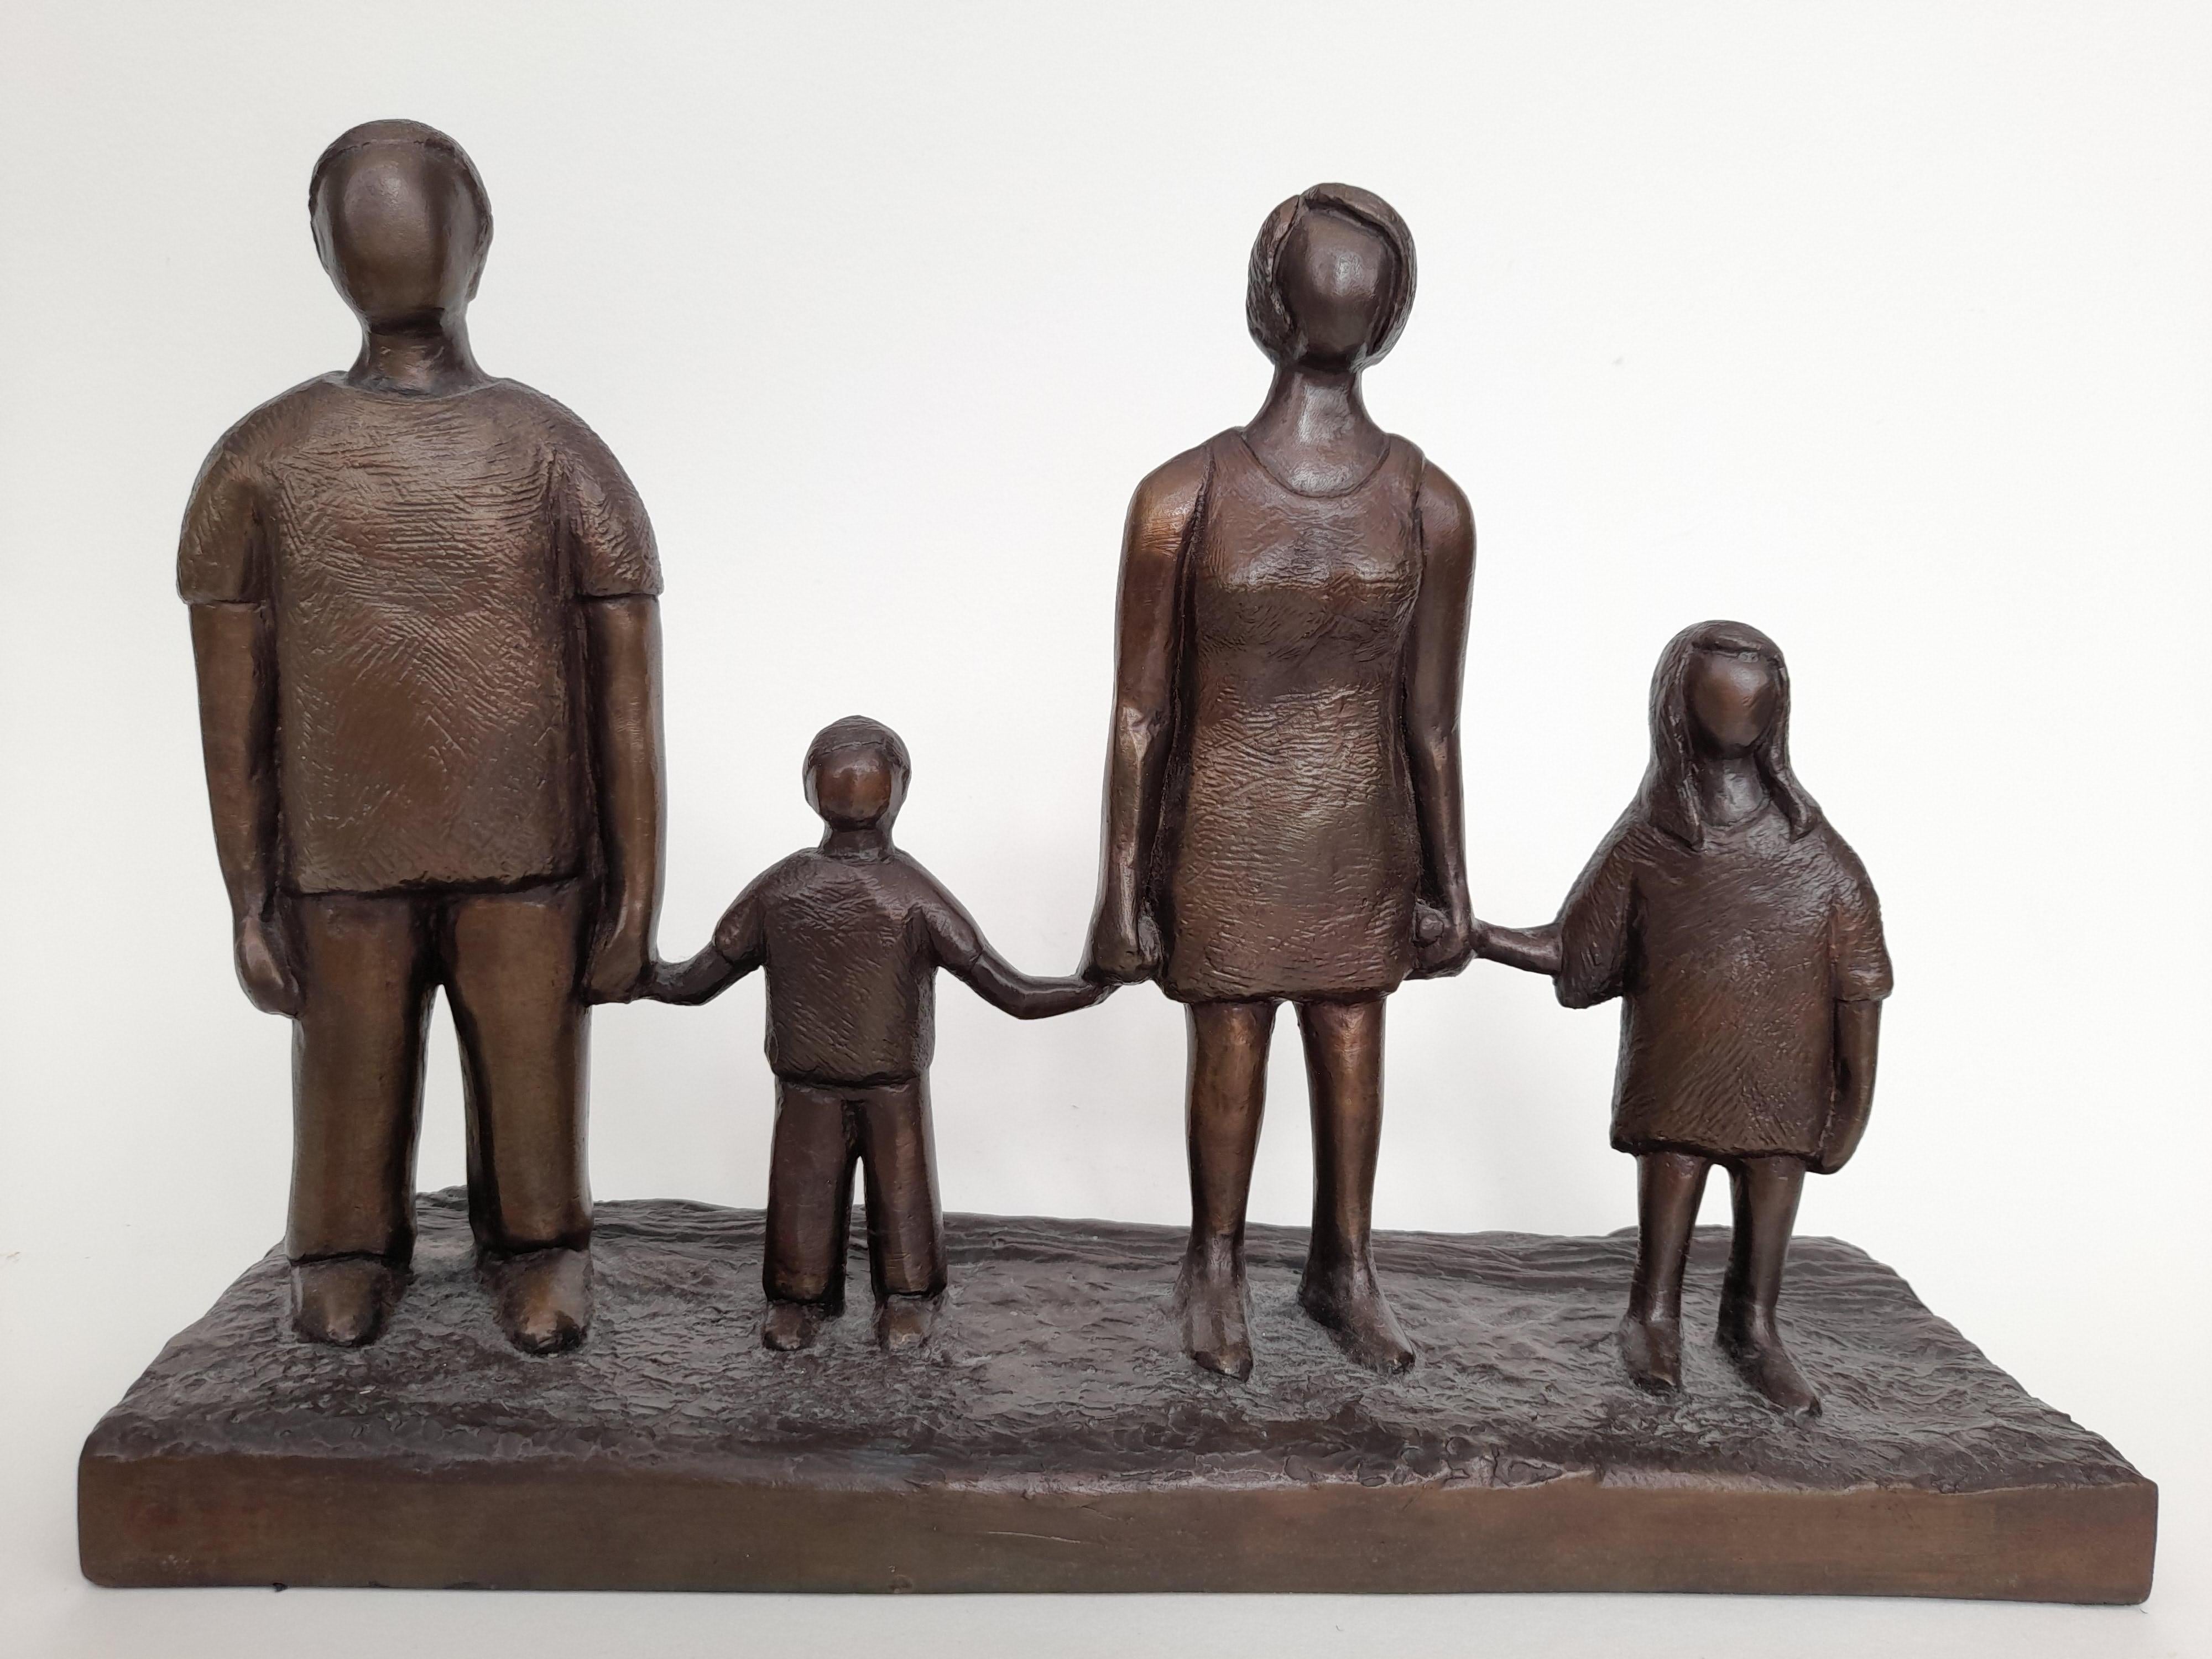 Diese Skulptur ist von Carolines eigener Familie inspiriert und spiegelt die Größenverhältnisse zueinander wider. Sie wollte den Moment festhalten, in dem ihre Kinder so viel kleiner waren als sie und ihr Mann, weil sie wusste, dass dieser Moment